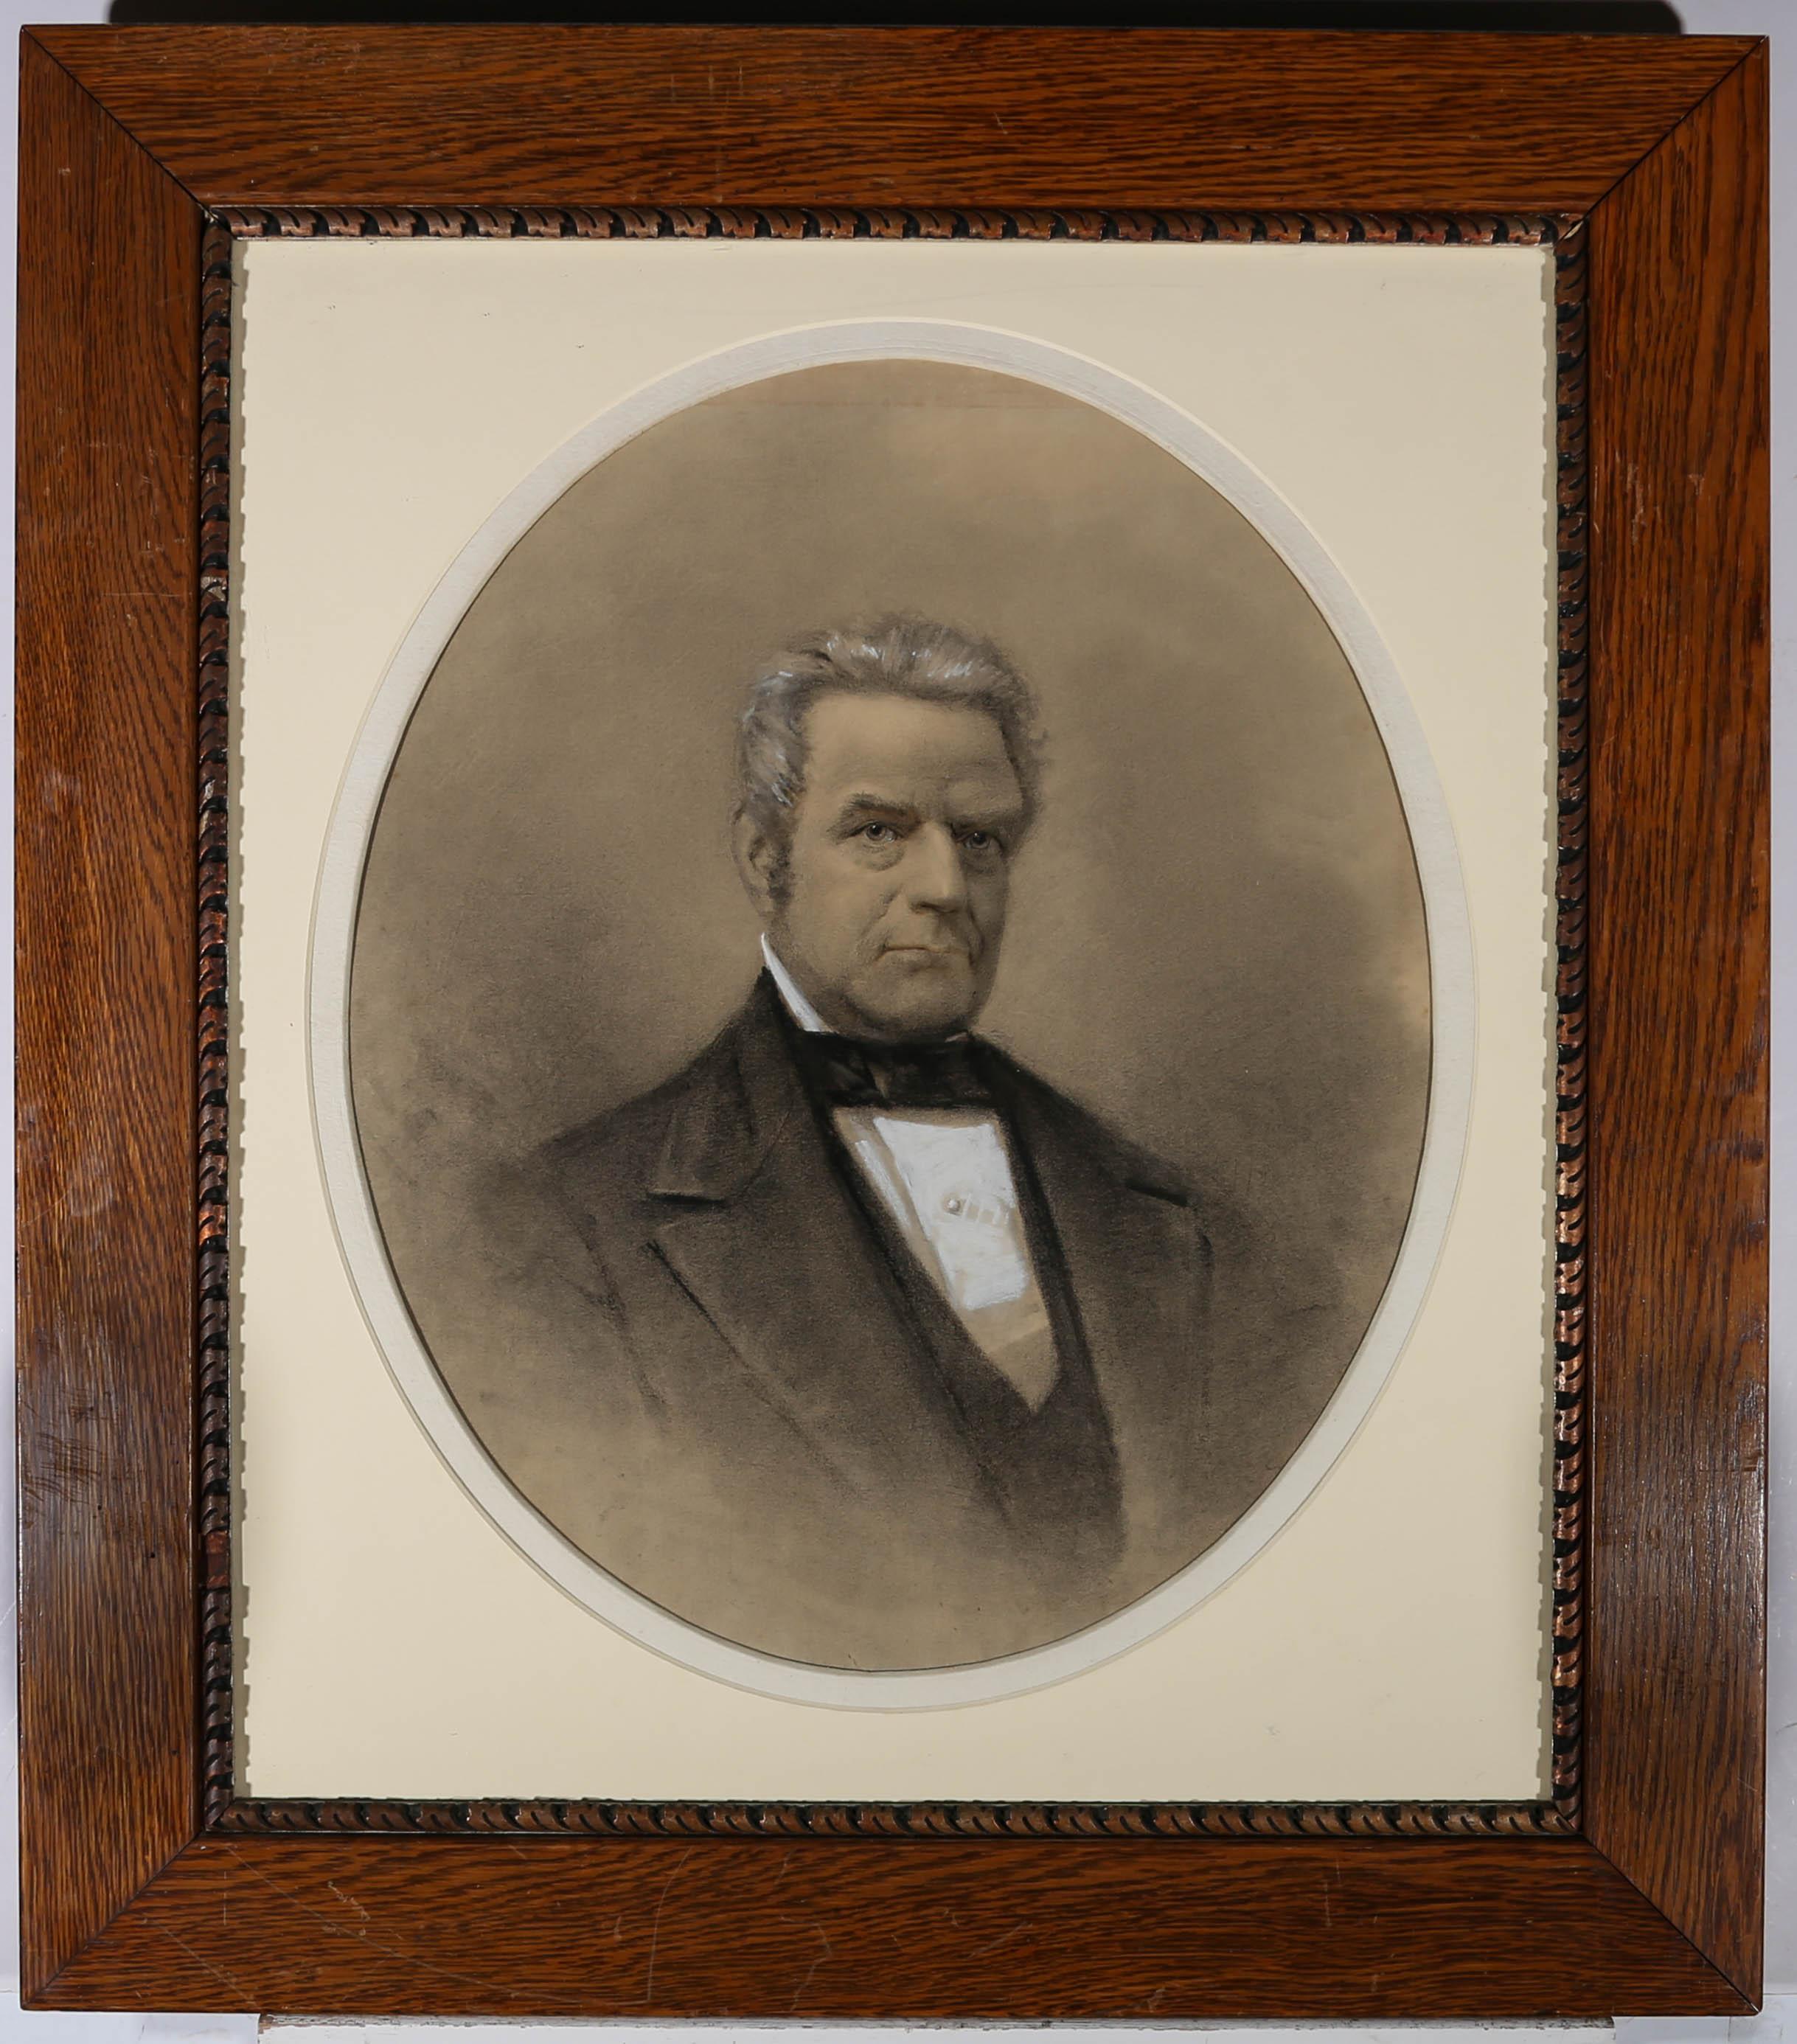 Dieses charmante Porträt zeigt einen Mann in feiner Kleidung, gezeichnet mit Kohle und Kreide. Das Label auf der Rückseite betitelt das Gemälde mit "Orlando Montague of Bridgton, Maine" und ist unter dem Passepartout signiert. Präsentiert in einem